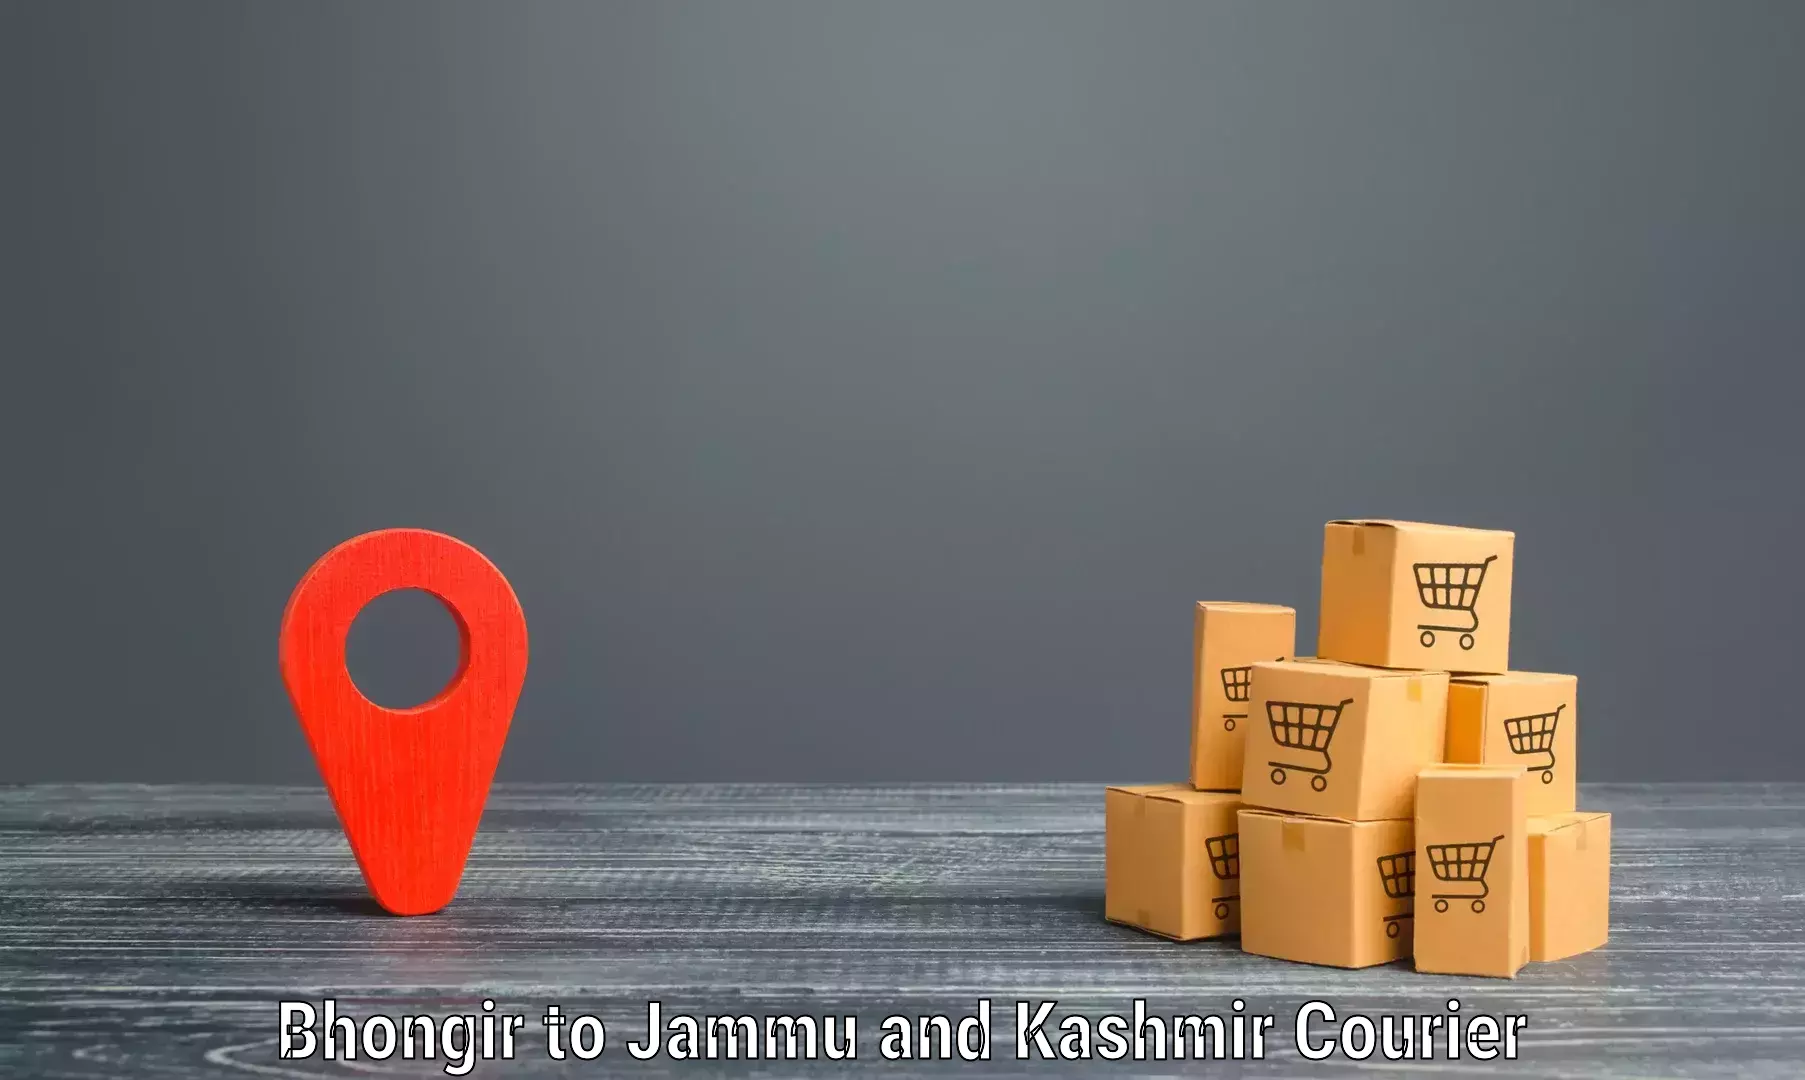 High-capacity parcel service Bhongir to Hiranagar